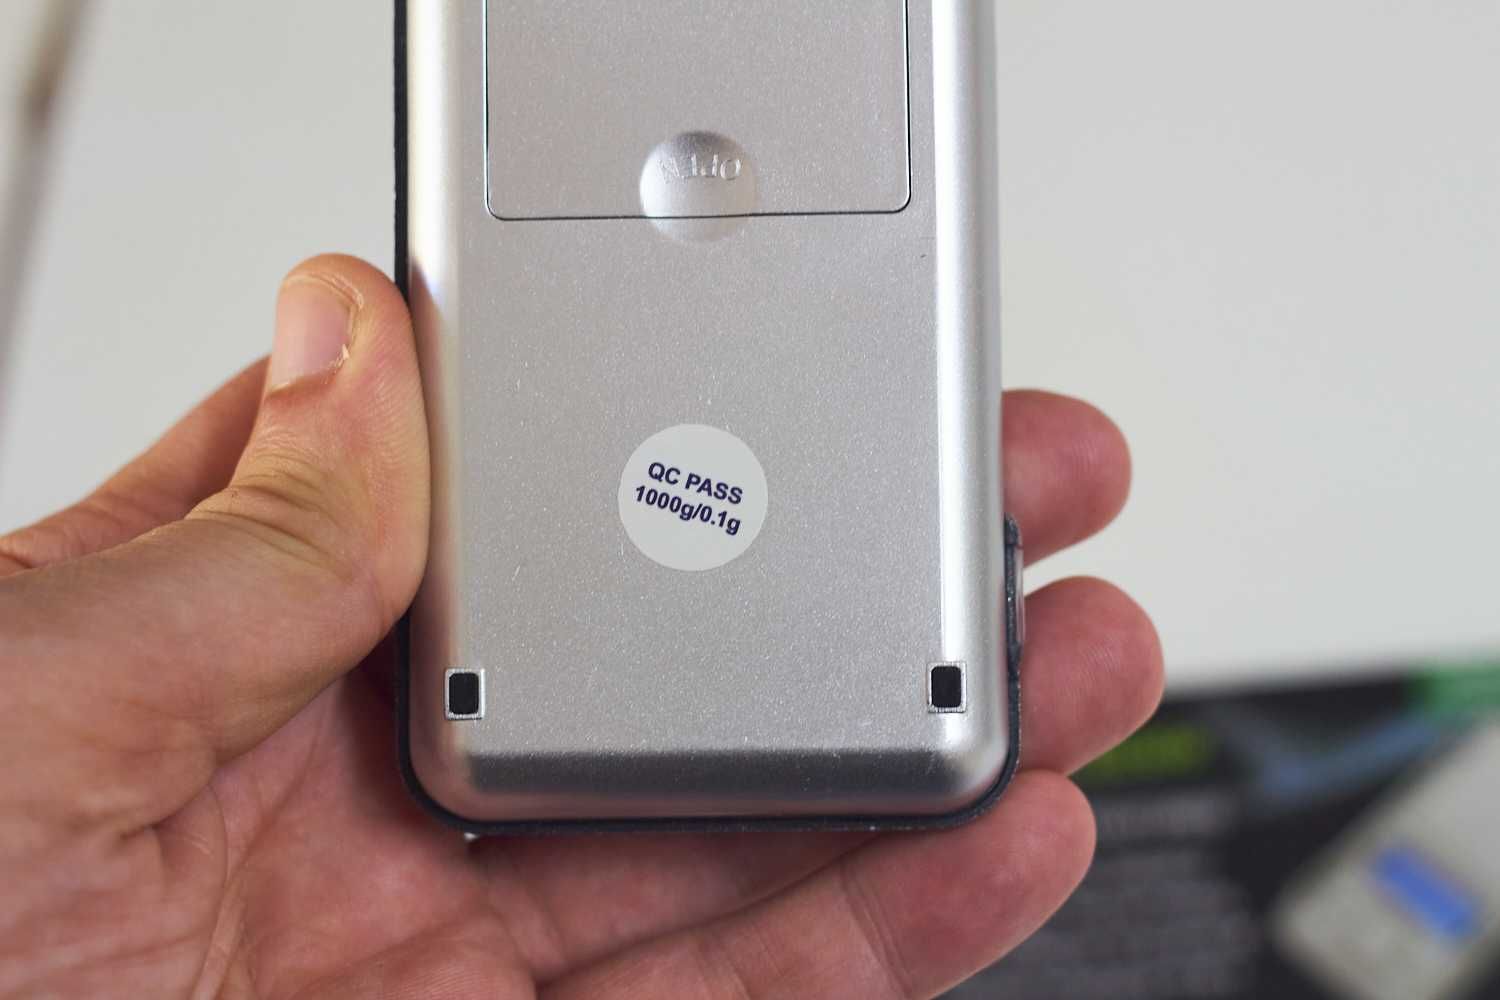 Balanca digital portatil: Alta precisao, tamanho compacto 0 - 1000 g